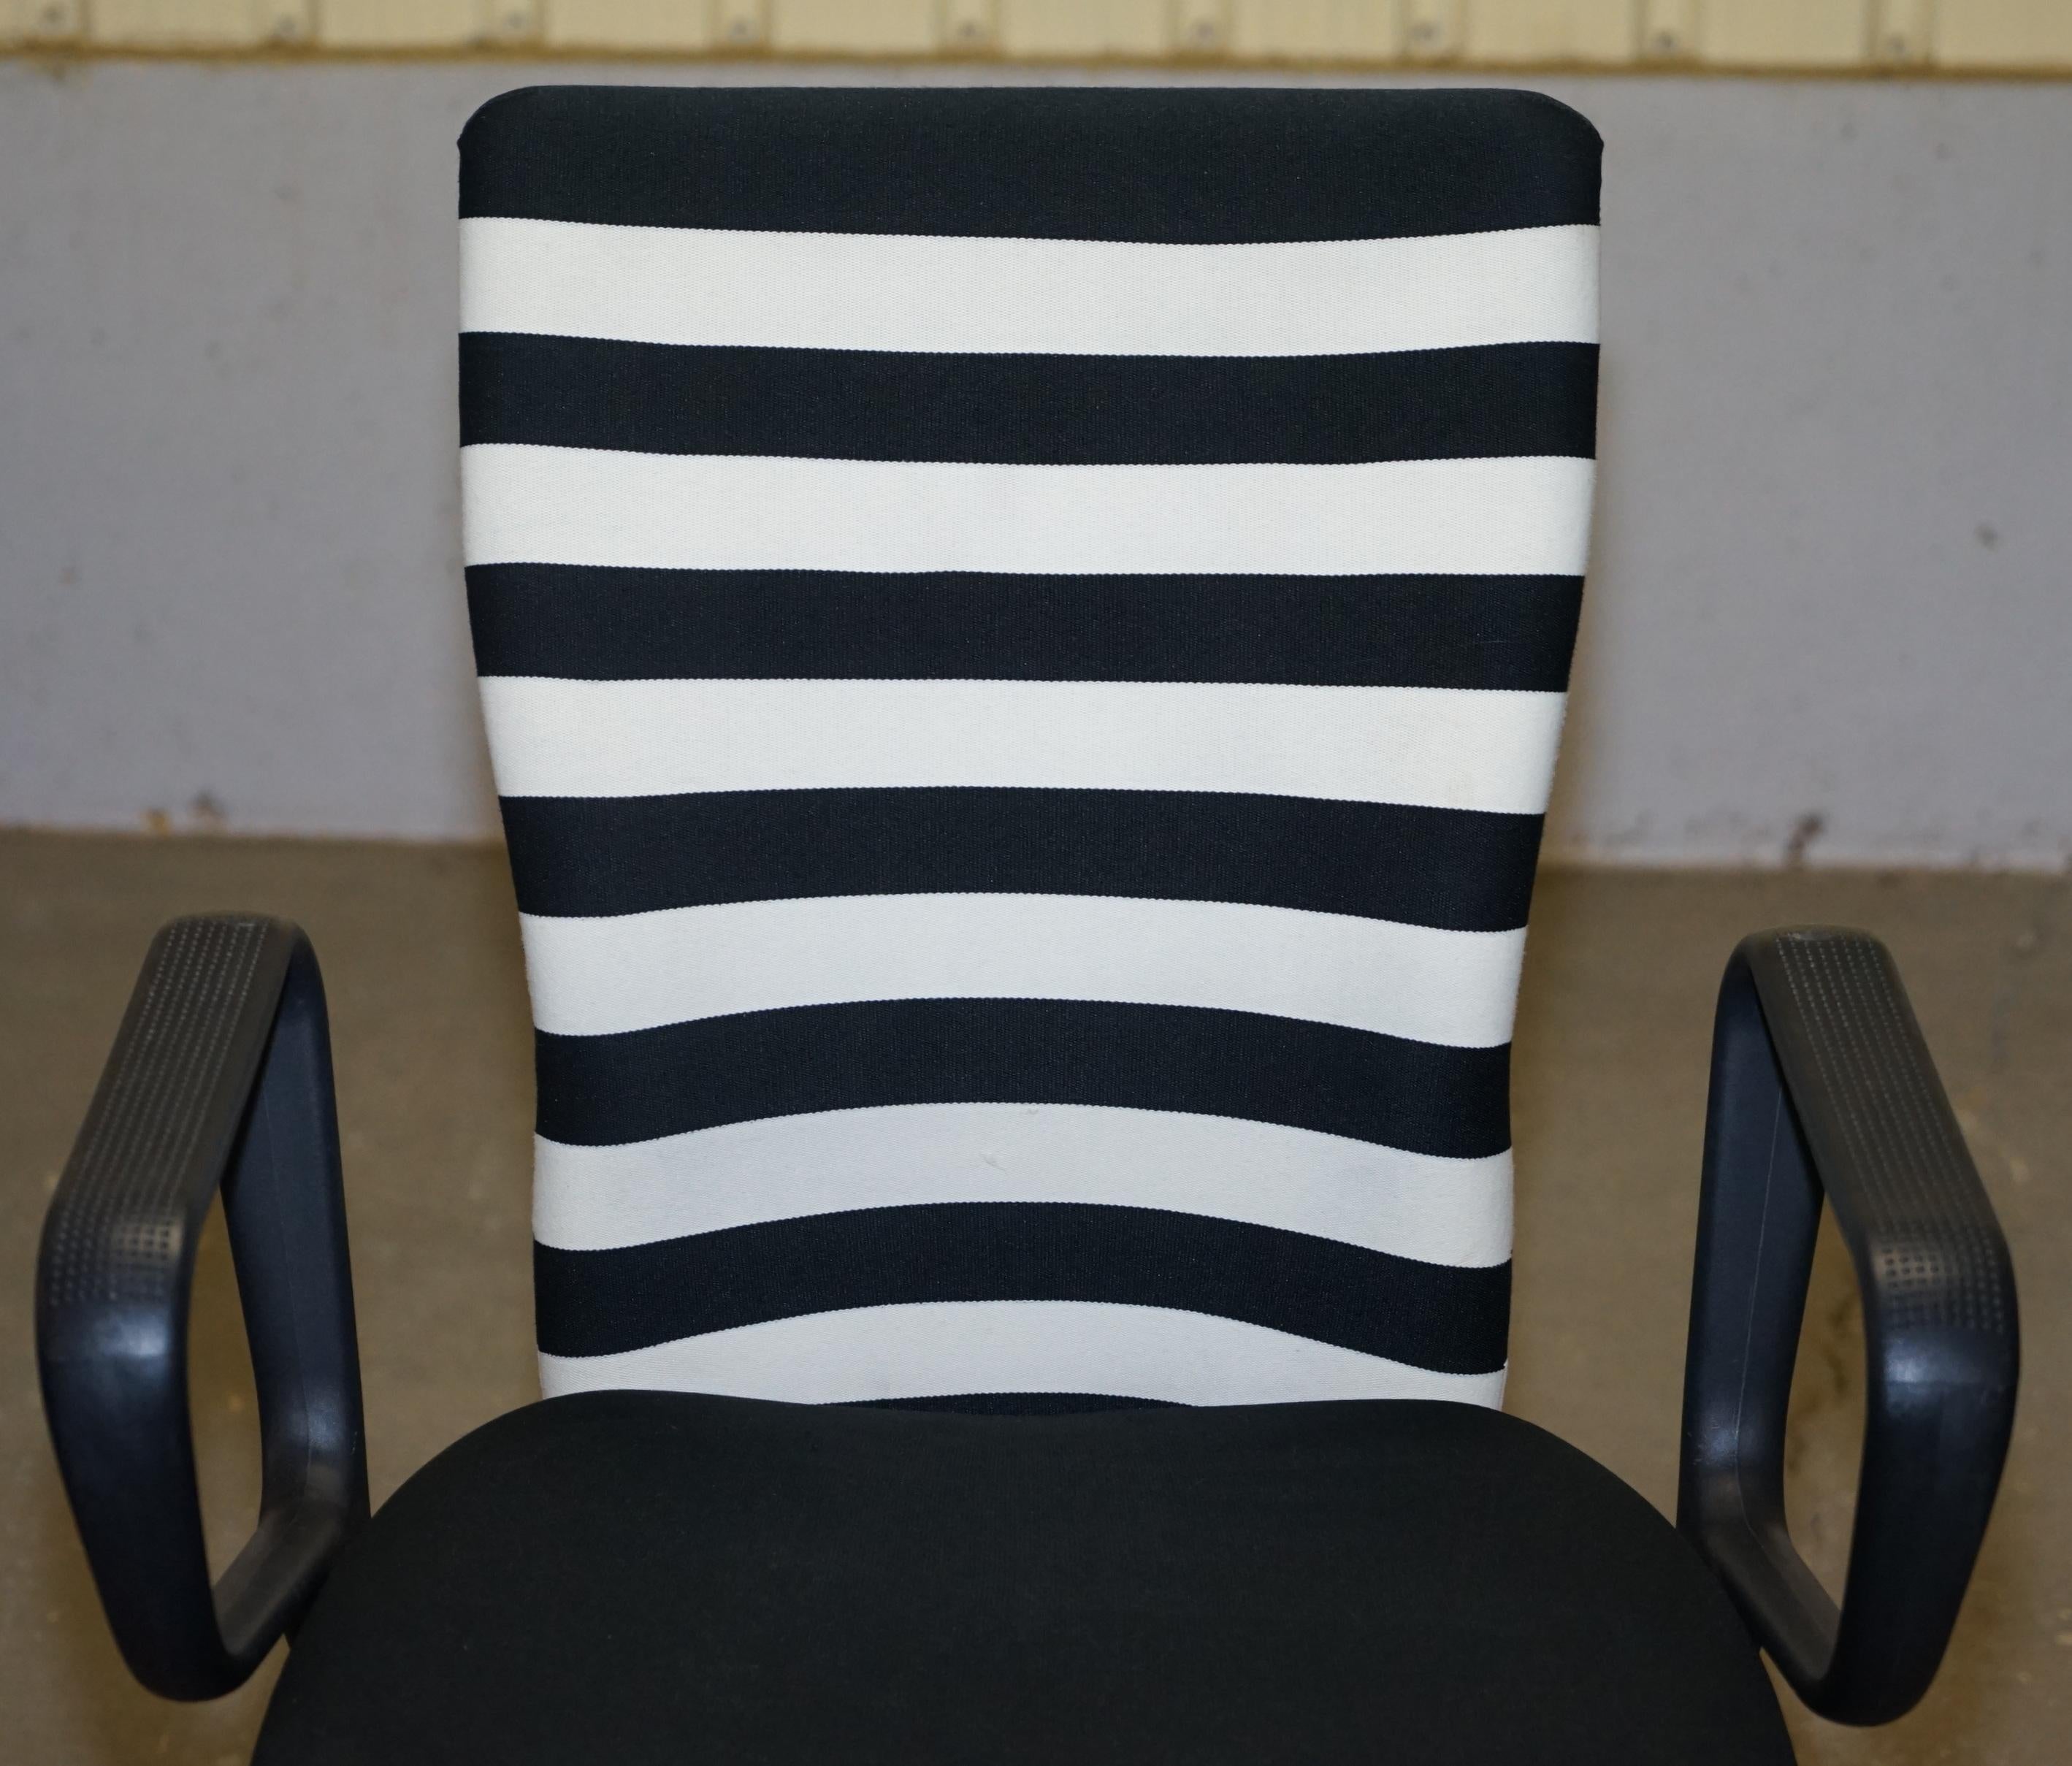 Européen 1 des 2 fauteuils de bureau d'origine estampillés Vitra, conçus de manière ergonomique en vente